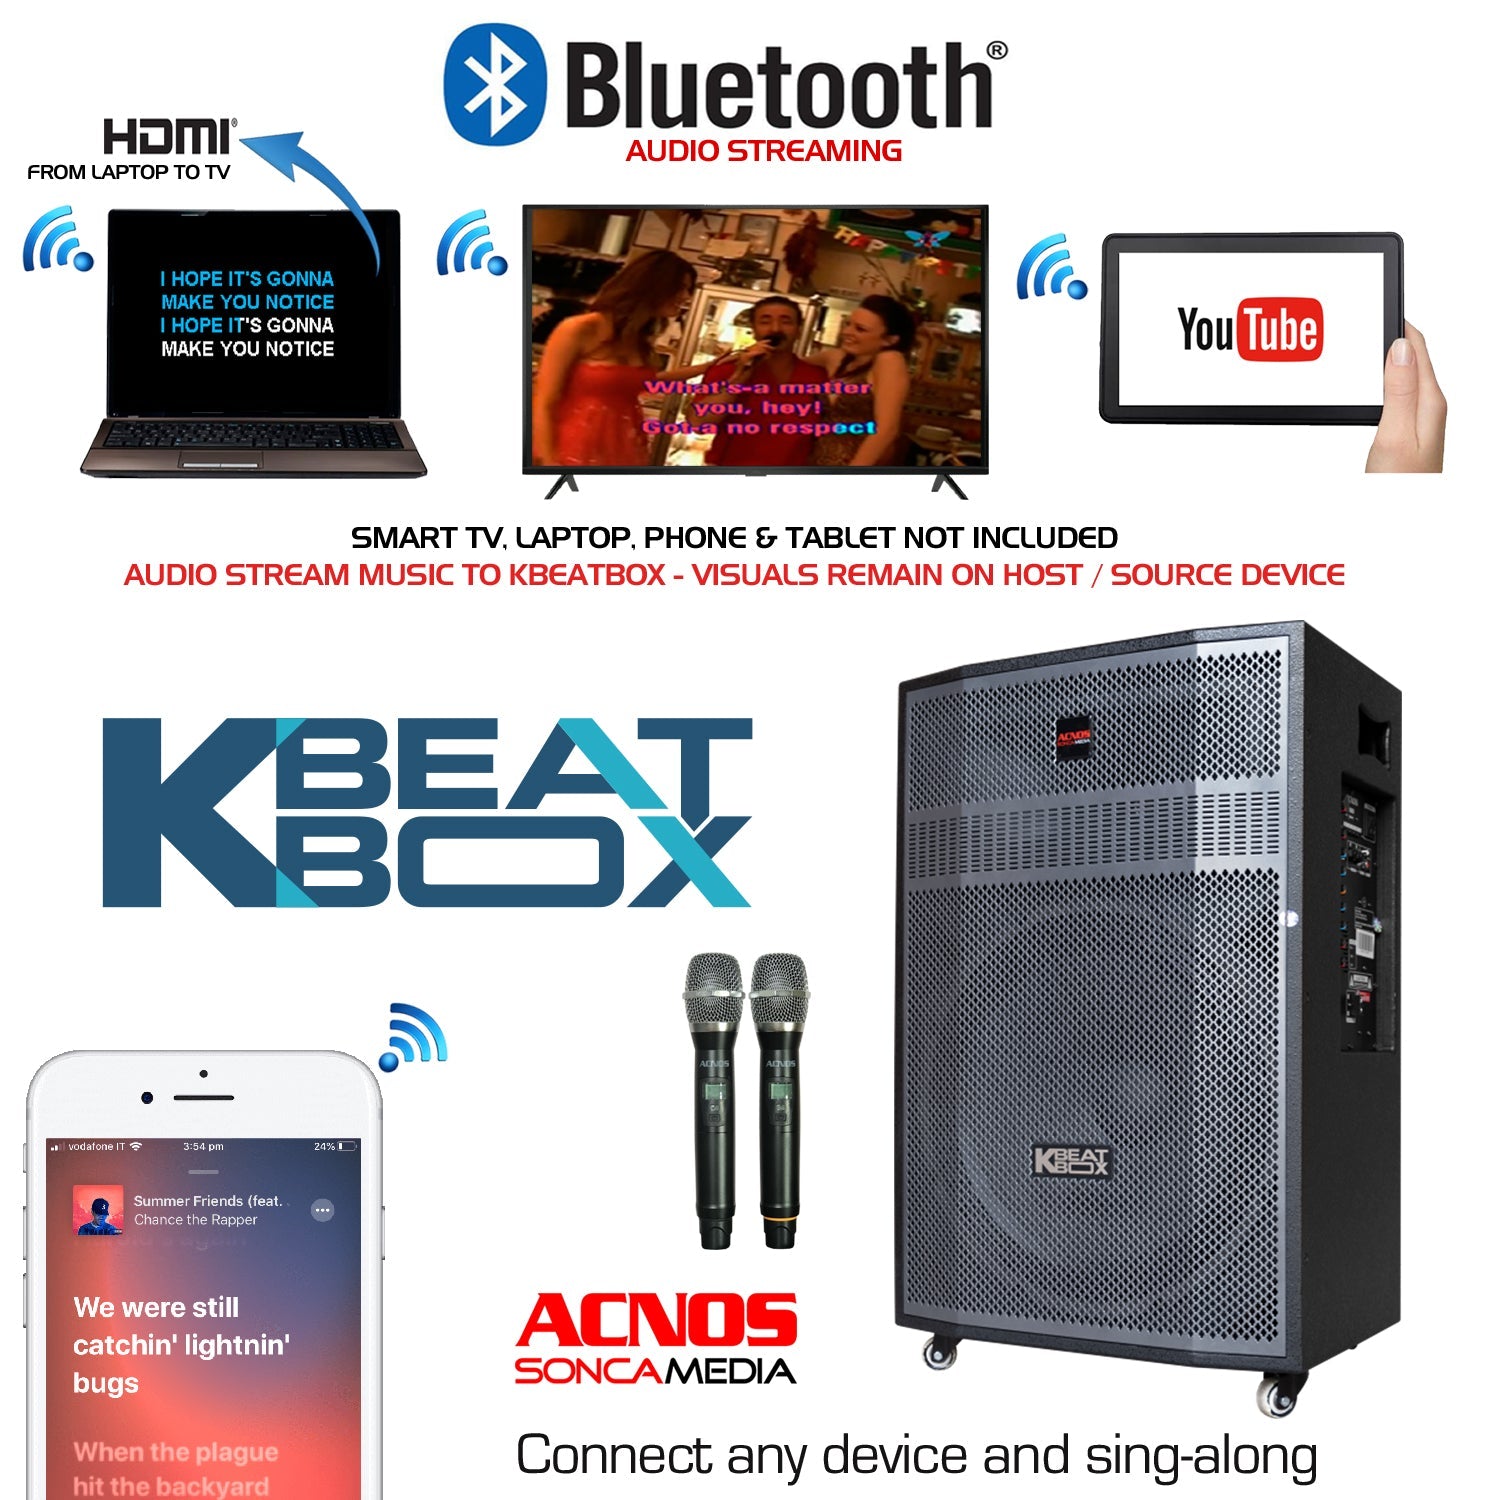 KBeatBox CB-56GD + KTV 15.6" Touch Screen (Package Deal) - Karaoke Home Entertainment